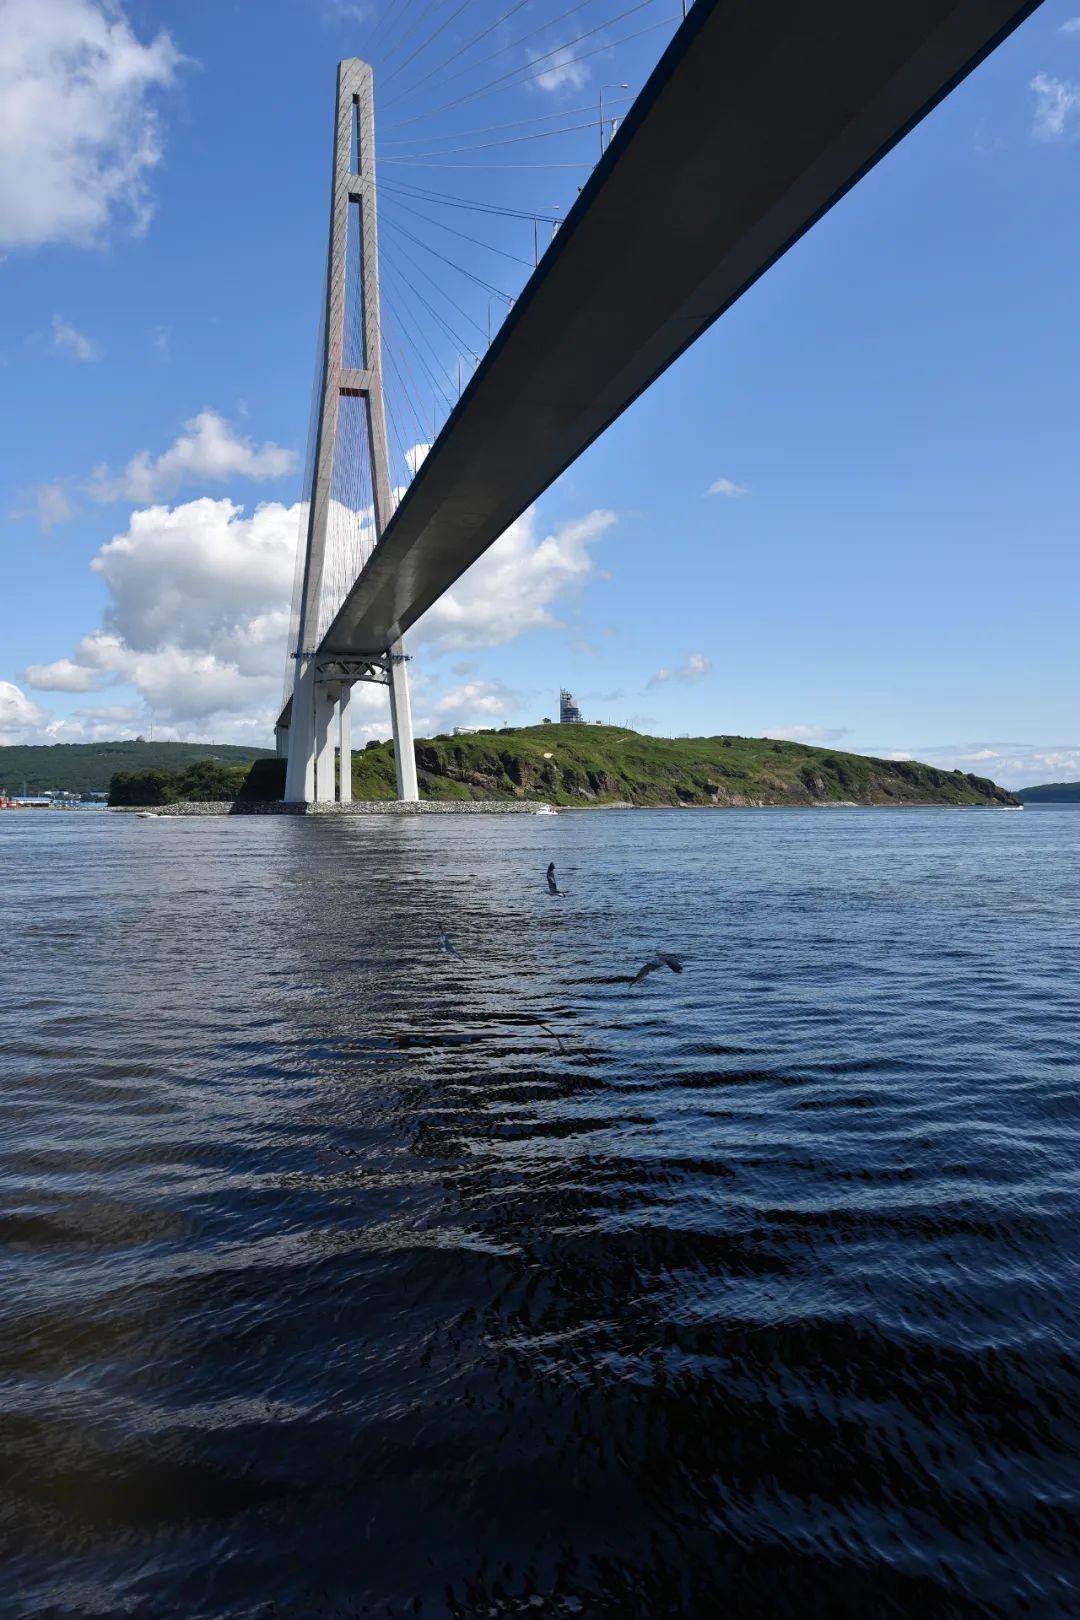 俄罗斯岛大桥(唐家骏拍摄)俄罗斯岛大桥的海鸥(唐家骏拍摄)海参崴的